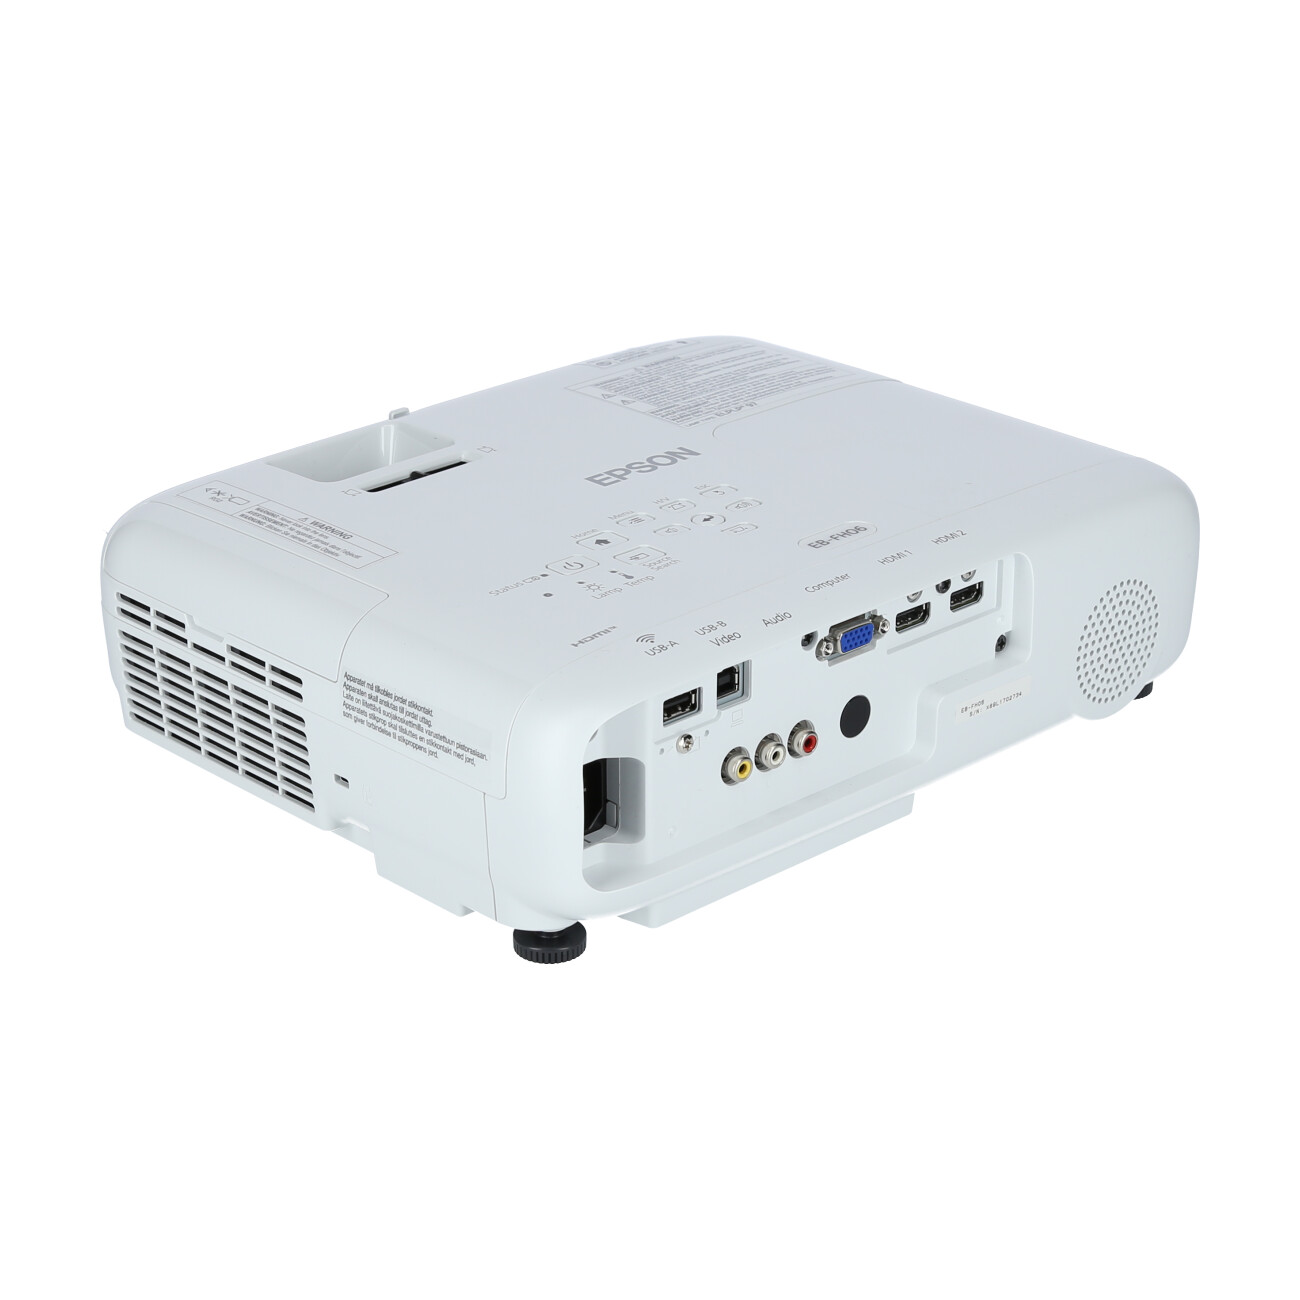 EPSON EB-FH06 - 3-LCD-Projektor - tragbar - 3500 lm (weiß) - 3500 lm (Farbe) - Full HD (1920 x 1080)